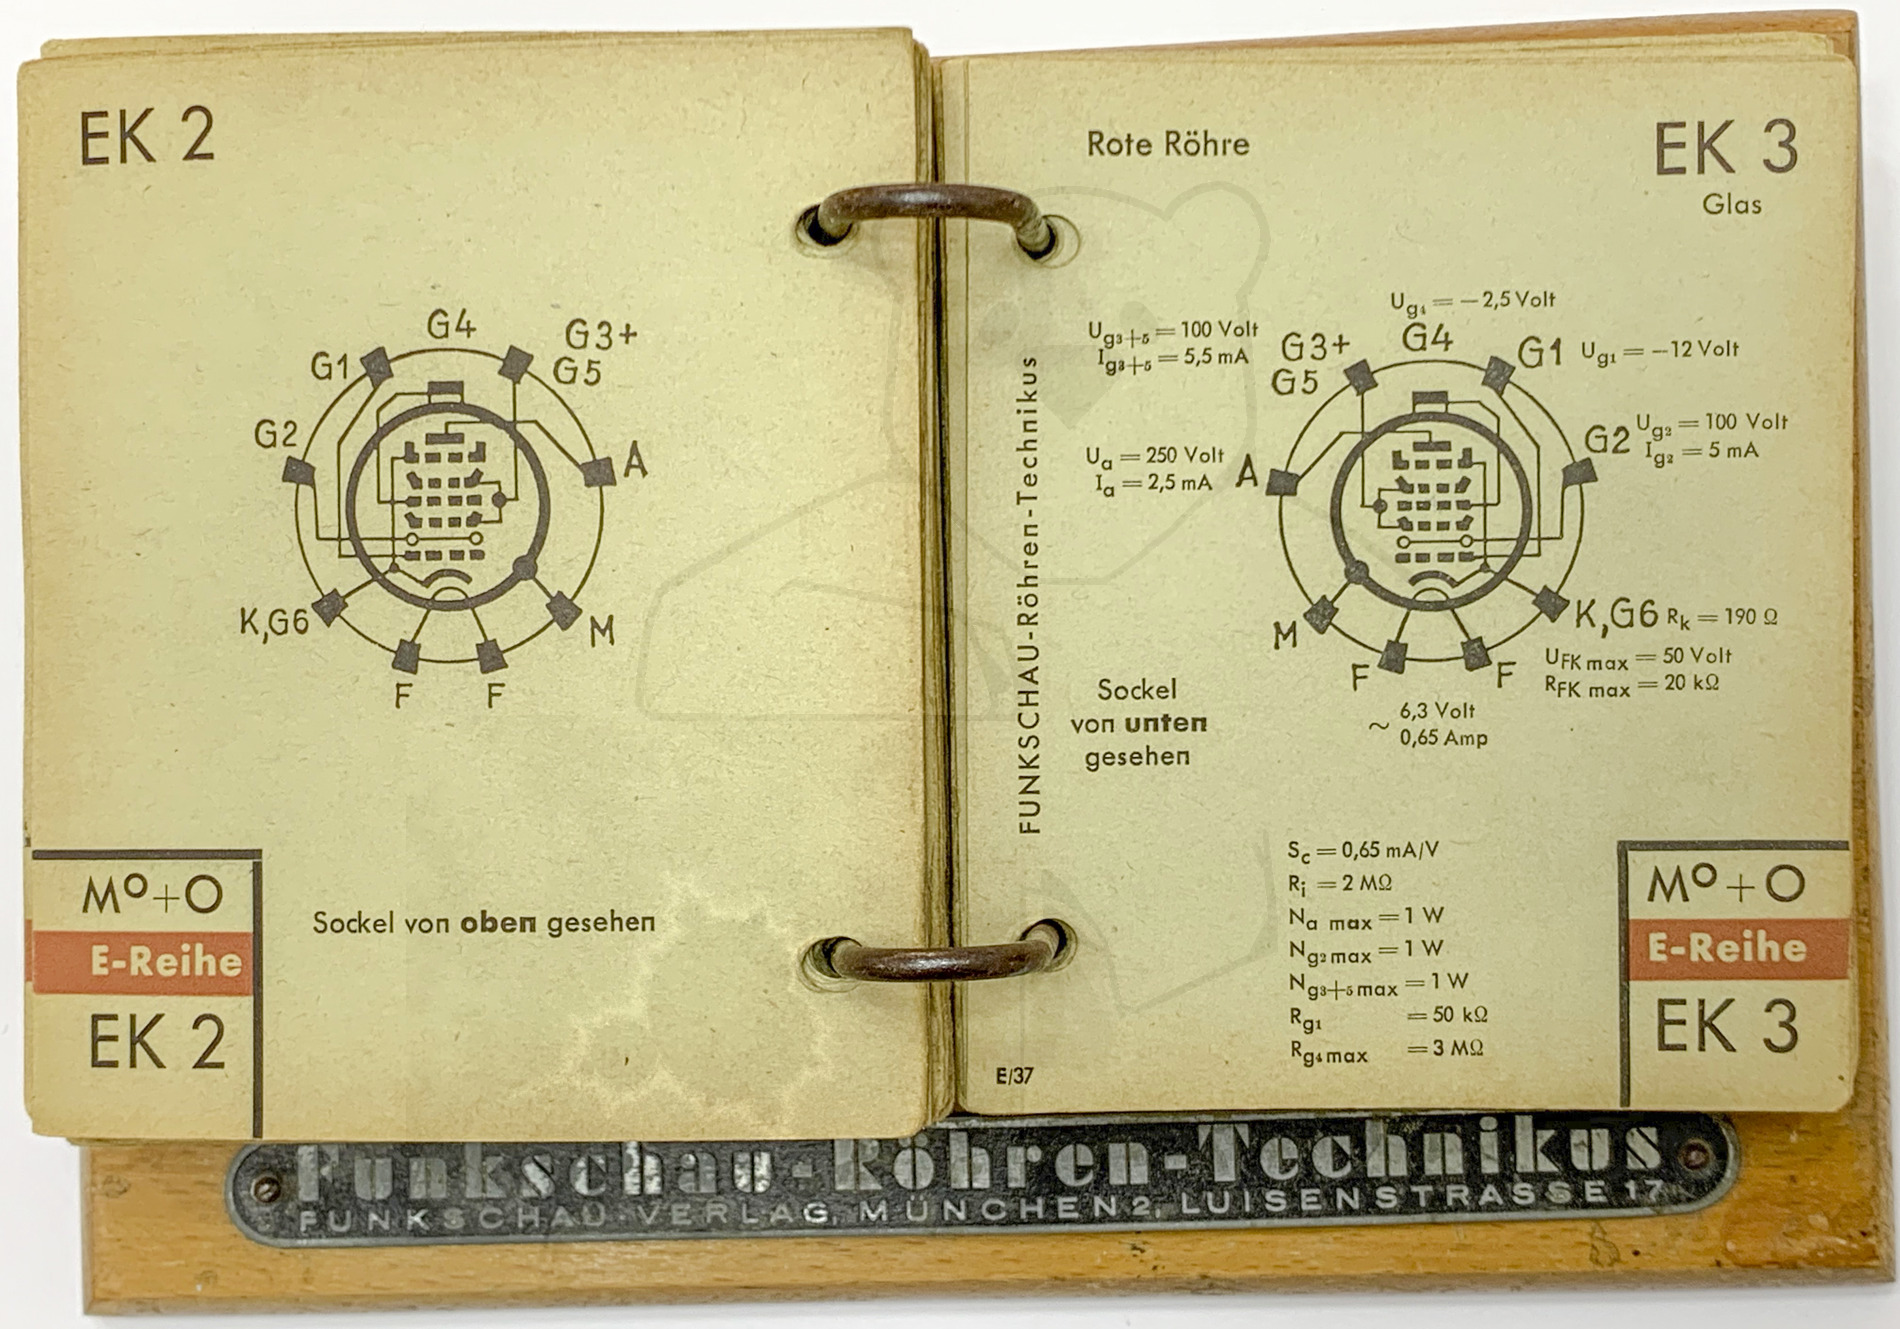 Funkschau Röhren Technikus (1943) - Sockel der EK2 und Beschreibung der EK3